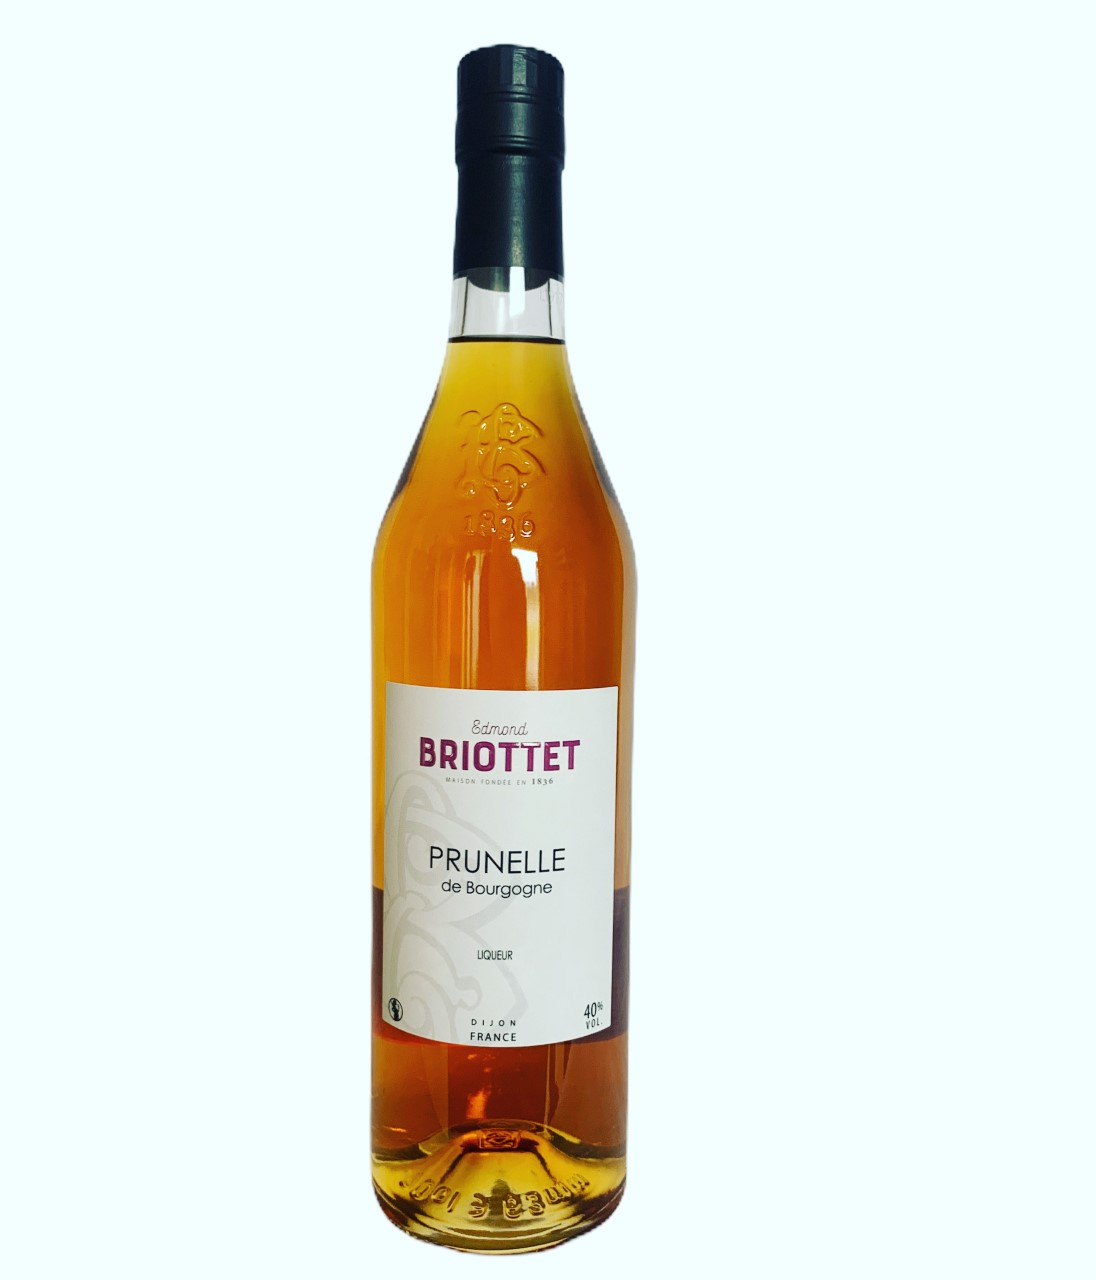 Edmond Briottet Prunelle de Bourgogne 40% 70cl